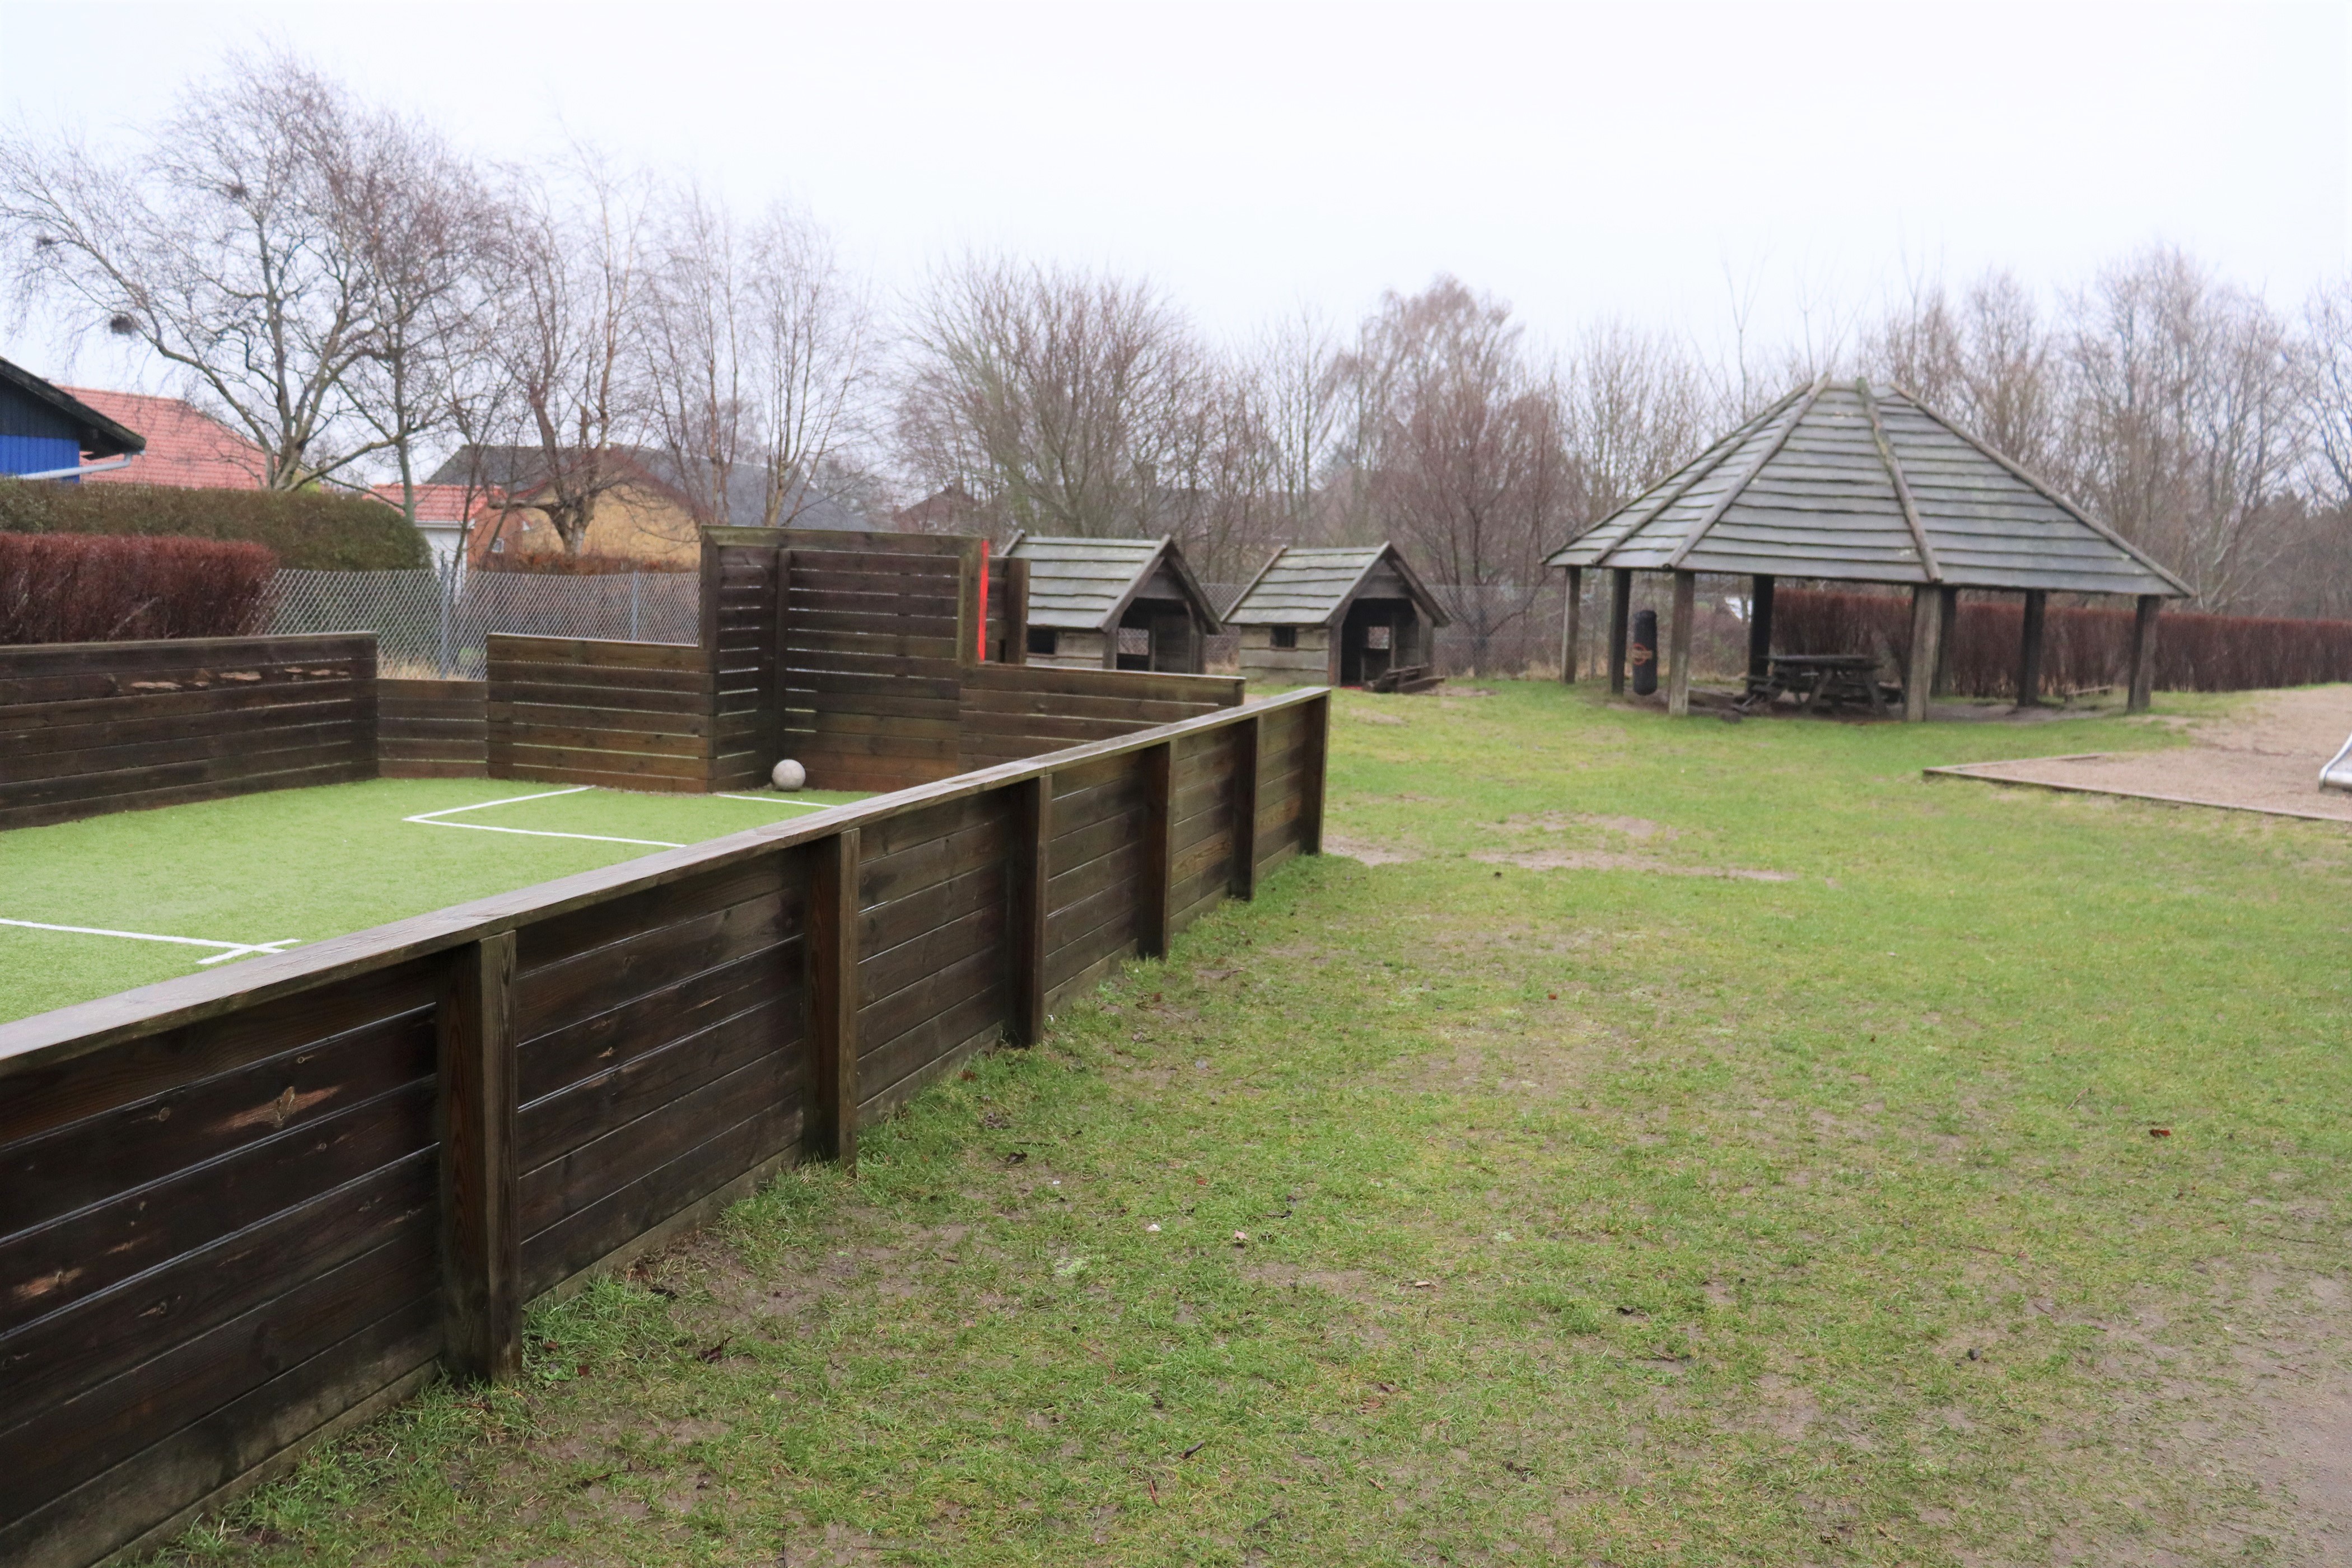 Børnehavens legeplads med indbygget fodboldbane og legehuse